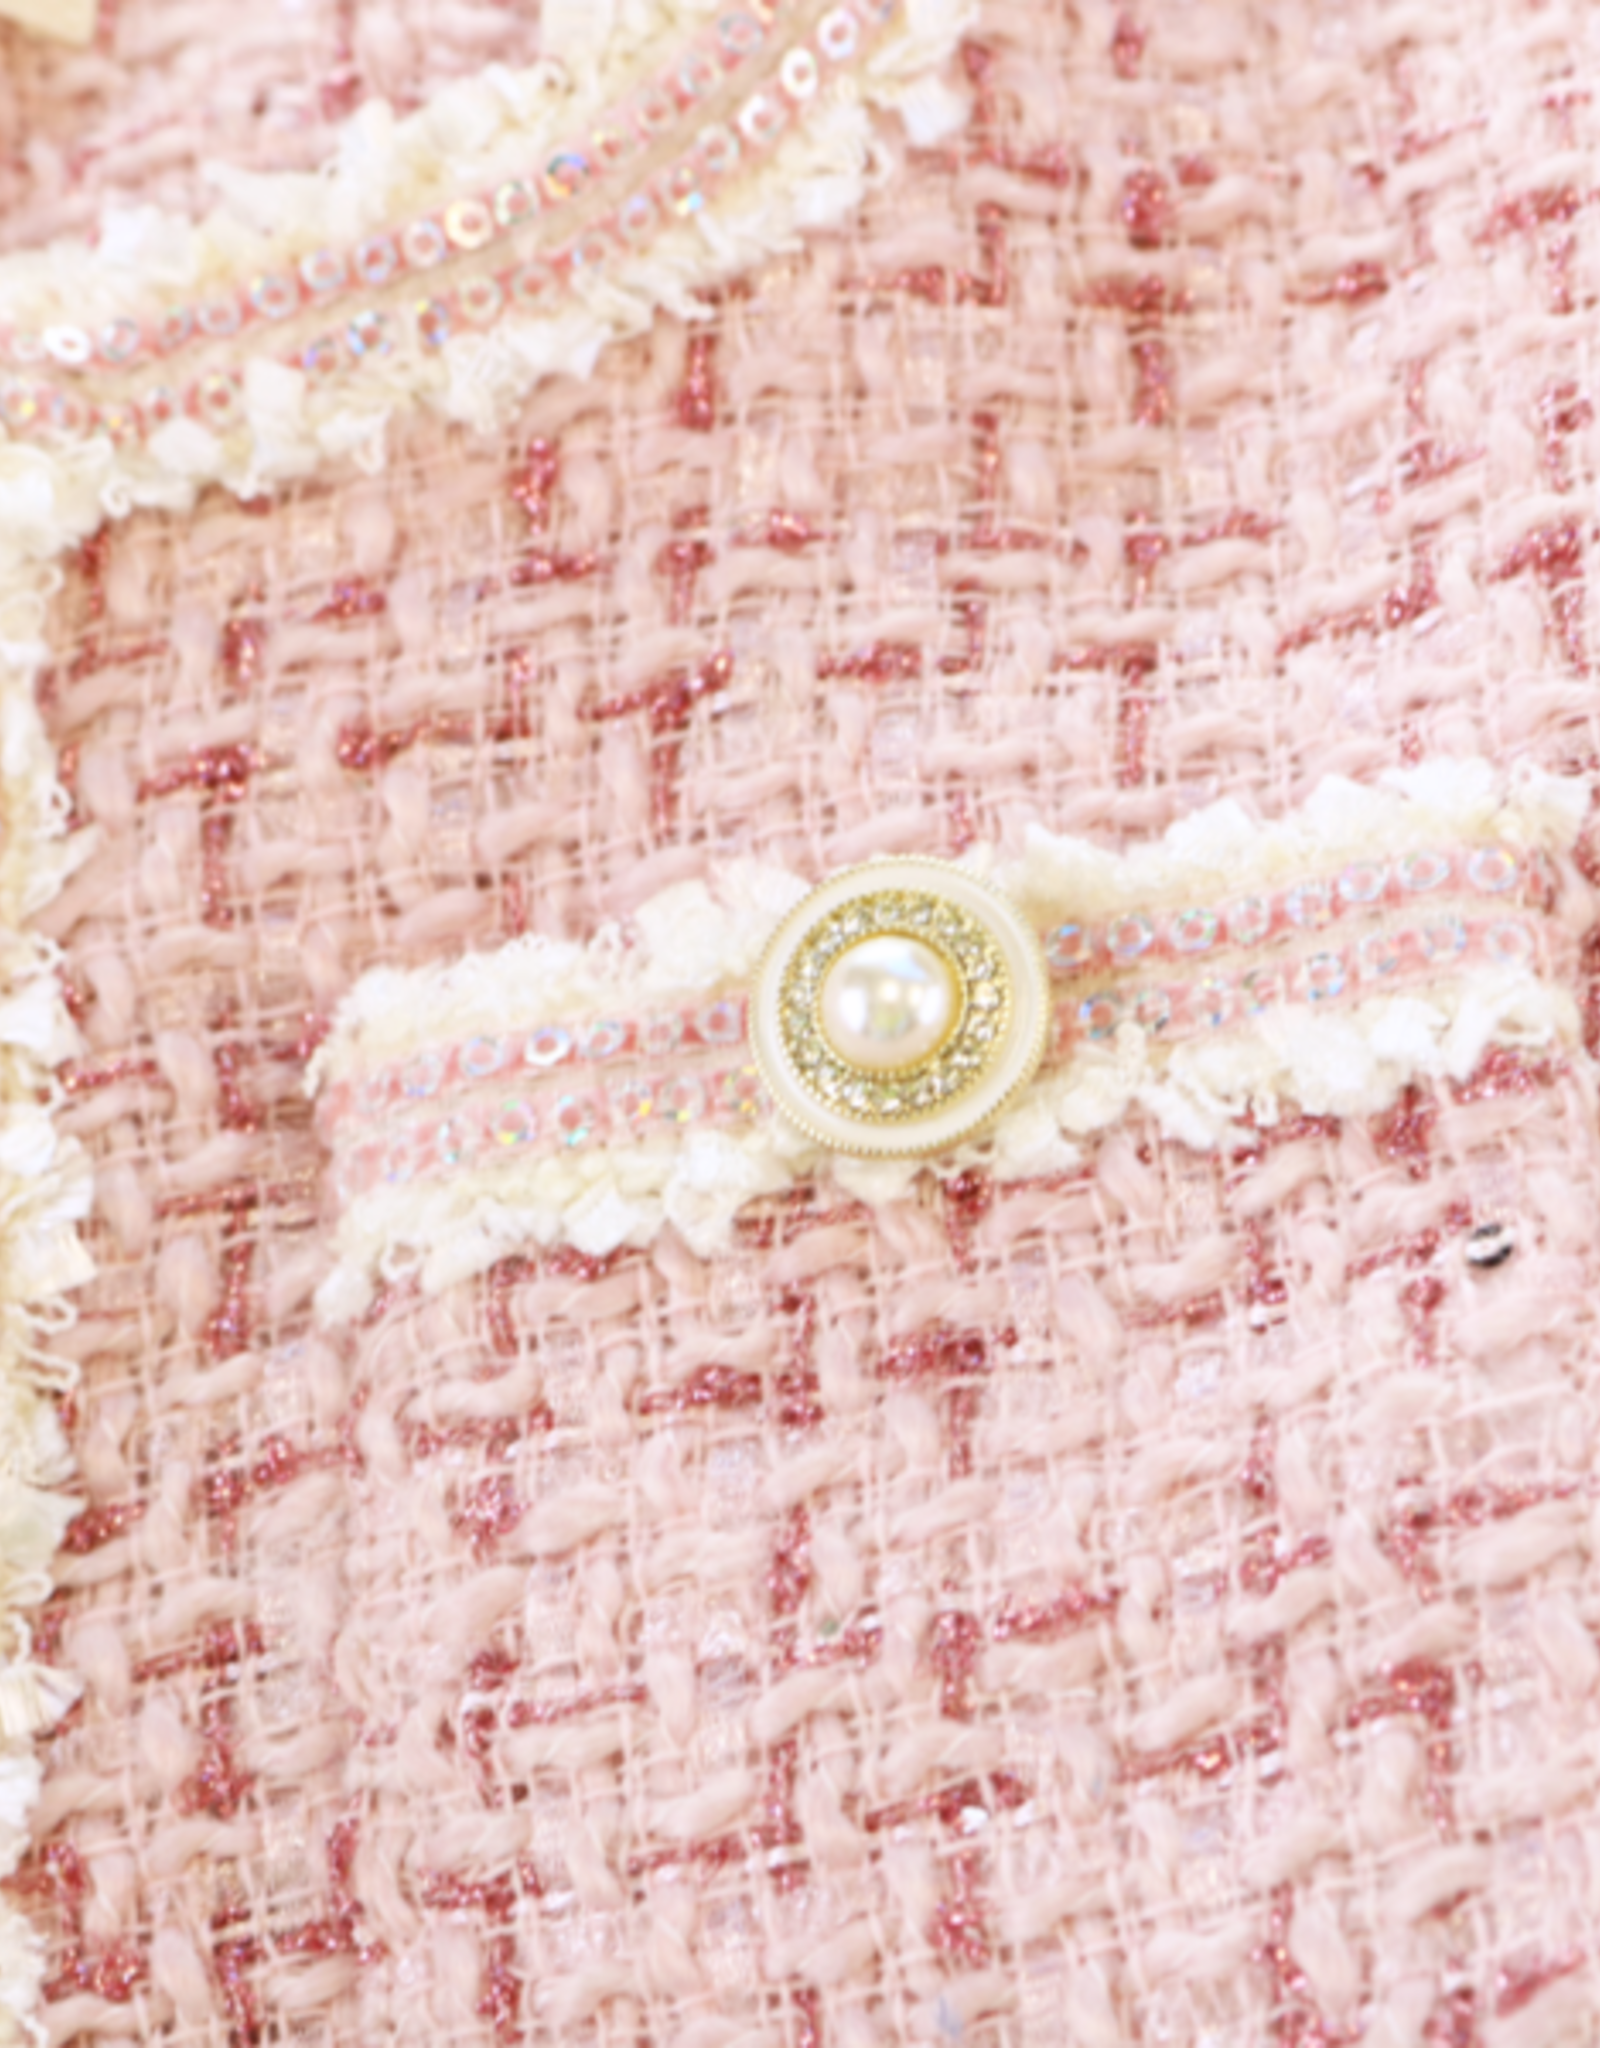 Girls' Sequin Tweed Jkt - Pink